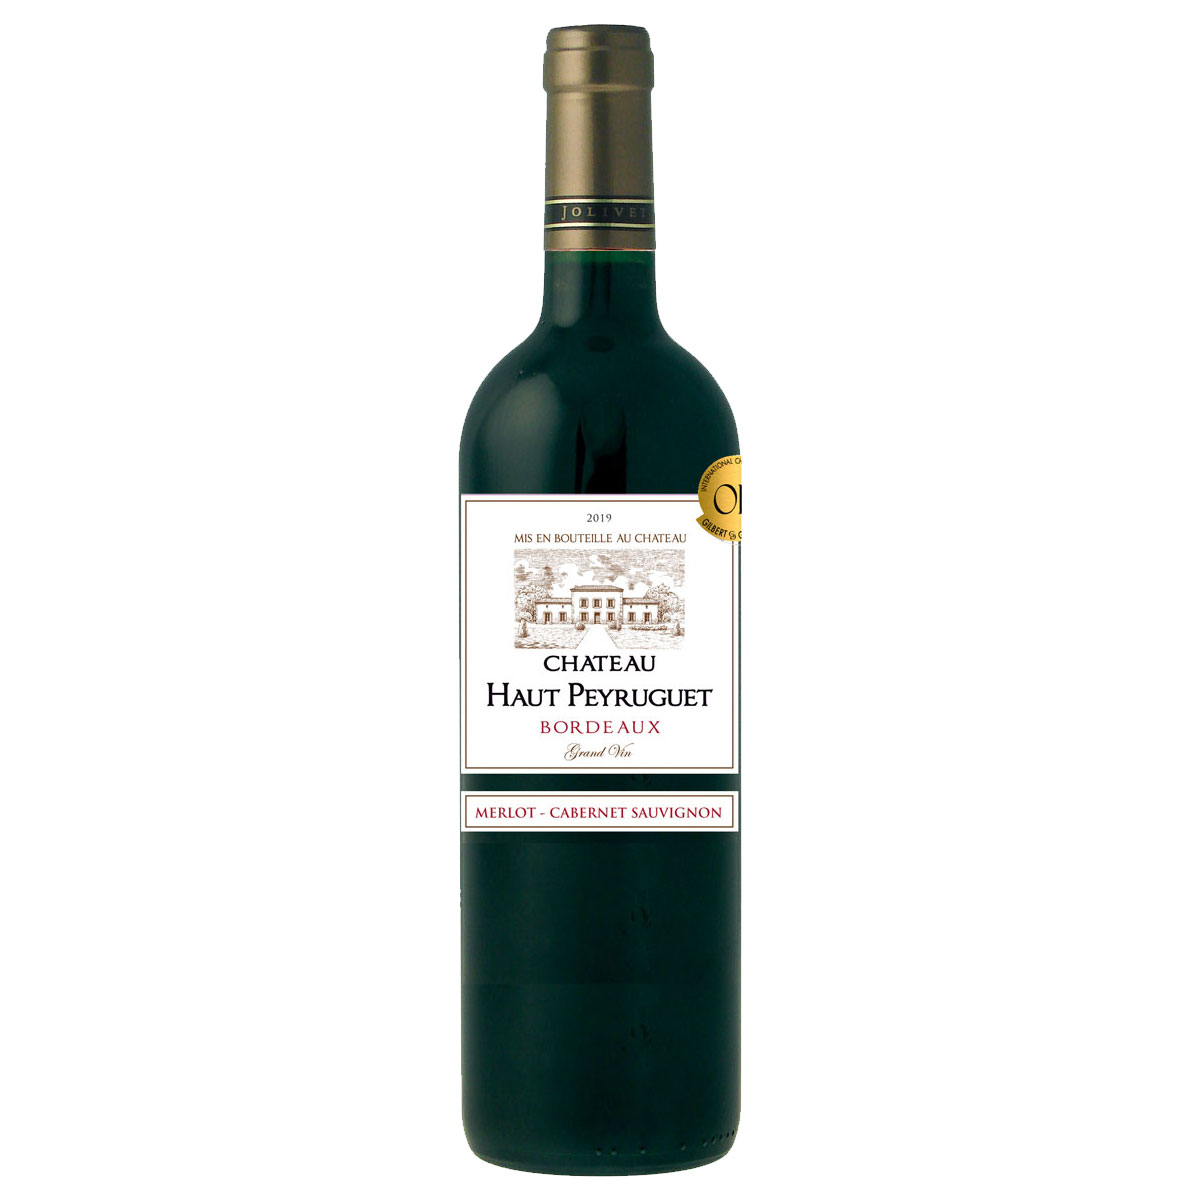 タイプ 赤ワインRed Wine 評価 ワイン・スペクテイター：87 商品名 シャトー・オー・ペイルゲ ボルドー 2019年Chateau Haut Peyruguet Bordeaux 生産者 シャトー・オー・ペイルゲChateau Haut Peyruguet 原産国名 フランス ボルドー Bordeaux ブドウ品種 メルロ85%、カベルネ・ソーヴィニヨン15%Merlot 85%,Cabernet Sauvignon 20% ヴィンテージ 商品名のヴィンテージをご確認ください 熟成 ステンレスタンクで18ヶ月熟成 ドサージュ量 アルコール度数 13.5% 内容量 750ml ※画像とはヴィンテージが異なる場合がございます。商品詳細のヴィンテージ項目でご確認ください。 ソムリエのワイン解説 例によって知名度は決して高くありませんが、フィラディスのソムリエチームがレストランのお客さま向けに厳選に厳選を重ねて仕入れてきた1本『シャトー・オー・ペイルゲ』。2019年とまだまだフレッシュなヴィンテージながら、今すぐおいしく楽しめるワインです。これぞボルドー理想のバランス！まさにお手本！とも言えるようなスタイルの1本、お料理を頑張った週末に楽しみたい、お手頃贅沢ボルドーですね。 カシスやブラックチェリーの濃厚に力強いアロマ、その奥の方には完熟イチゴの甘い香りも。モカ的なコーヒー香、ホイップクリーム、乾いた木の皮と黒胡椒のアクセント。抜栓直後から、香りイメージ通りの豊かで厚みある果実味が甘く広がり、まだまだ瑞々しい酸とまろやかにこなれたタンニンがバッチリの調和で展開。余韻も予想以上に長く、ブラックフルーツと芳しいクリームの香りがしっかりと残ります。そしてこれは一緒に楽しめる料理の幅が実に広いワインですね！！！シンプルにグリルした肉に合わせるもよし、煮込み系もよし…ワインに甘さがあるので、甘辛系の肉料理が特に良いです。牛肉のしぐれ煮なんかすごく合いますよ。≪良い状態で楽しむには、いつ抜栓する？≫：開けたての段階から十分に果実の甘み・旨みが開いていましたので、特に早めに抜栓はせずに最初からゆっくりと変化を楽しみつつ飲み進めていくので良いと思います。開いた状態から楽しみたいときは、飲み始める30分ほど前に開けておけば十分ですよ。2019年ヴィンテージ、今とてもおいしい状態に仕上がってきています！≪このワインがもっとおいしくなる温度設定≫：軽く冷やして、充実したフルーツ感を楽しんで戴きたいワインですね。セラー保管だったら冷蔵庫で20-30分くらい追加で冷やし、常温保存だったら飲む前1時間ほど冷蔵庫、または7-8分ほどアイスバケツで冷やしてから。≪おすすめのワイングラス形状・サイズ≫：ボルドー型グラス(縦長、口細)、サイズは小さめ?中程度が良いと思います。凝縮した果実感、パワフル且つこなれてまろやかなタンニンがしっかりと楽しめます。 生産者を知ると、ワインはもっと美味しくなる Chateau Haut Peyruguet シャトー・オー・ペイルゲ 生産者のこだわり 『シャトー・オー・ペイルゲ』は、ボルドーで複数のシャトーを経営するジョリヴェ夫妻が所有するエステート。標高の高いビュート・ ド・ ロネイの斜面に位置する小さな村スーサックで、ジョリヴェ家は4世代にわたってブドウ畑の管理をしてきました。1981年にジョリヴェ夫妻は代々続く27haのワイナリー『シャトー・オー・ペイルゲ』を引き継ぎ、以来何年にもわたってワイナリーを近代化および拡張すると同時に、自分たちの基本原則に忠実でありつつ細心の注意を払いながらワイン作りを行っています。彼らの仕事に対するこの情熱はすべての異なる段階、ブドウの色の変化からワイン造りのプロセスまですべてを自分たちで直接コントロールすることを意味しています。1999年には近隣のワイン生産者と共同で廃水処理施設を建設し、大切な自然環境の保護に貢献する取り組みをスタート。現在はボルドーのテロワールの真の価値を反映した赤、白、ロゼを作っています。 ■種類ワイン Wine 果実酒 洋酒 お酒 ドリンク ■販売元ワイン専門商社 株式会社Firadis ワインセンモンショウシャ カブシキガイシャフィラディスFiradis WINE CLUB30 フィラディス ワインクラブサーティワイン専門通販サイト Firadis WINE CLUB楽天市場店 フィラディス ワインクラブ ラクテンイチバテン